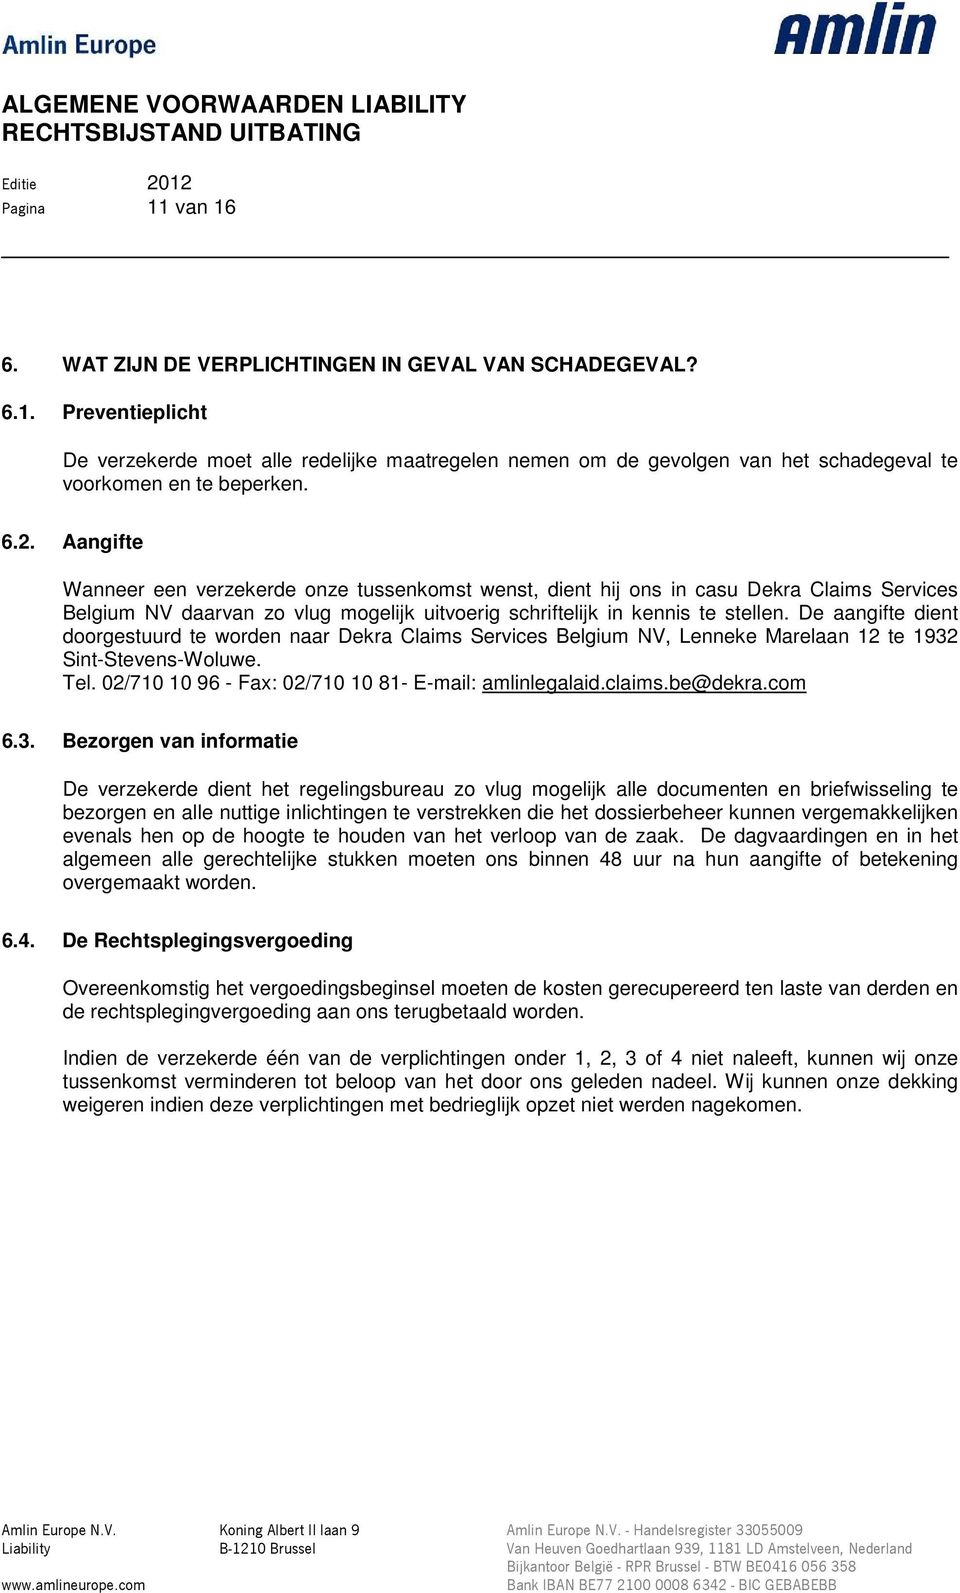 De aangifte dient doorgestuurd te worden naar Dekra Claims Services Belgium NV, Lenneke Marelaan 12 te 1932 Sint-Stevens-Woluwe. Tel. 02/710 10 96 - Fax: 02/710 10 81- E-mail: amlinlegalaid.claims.